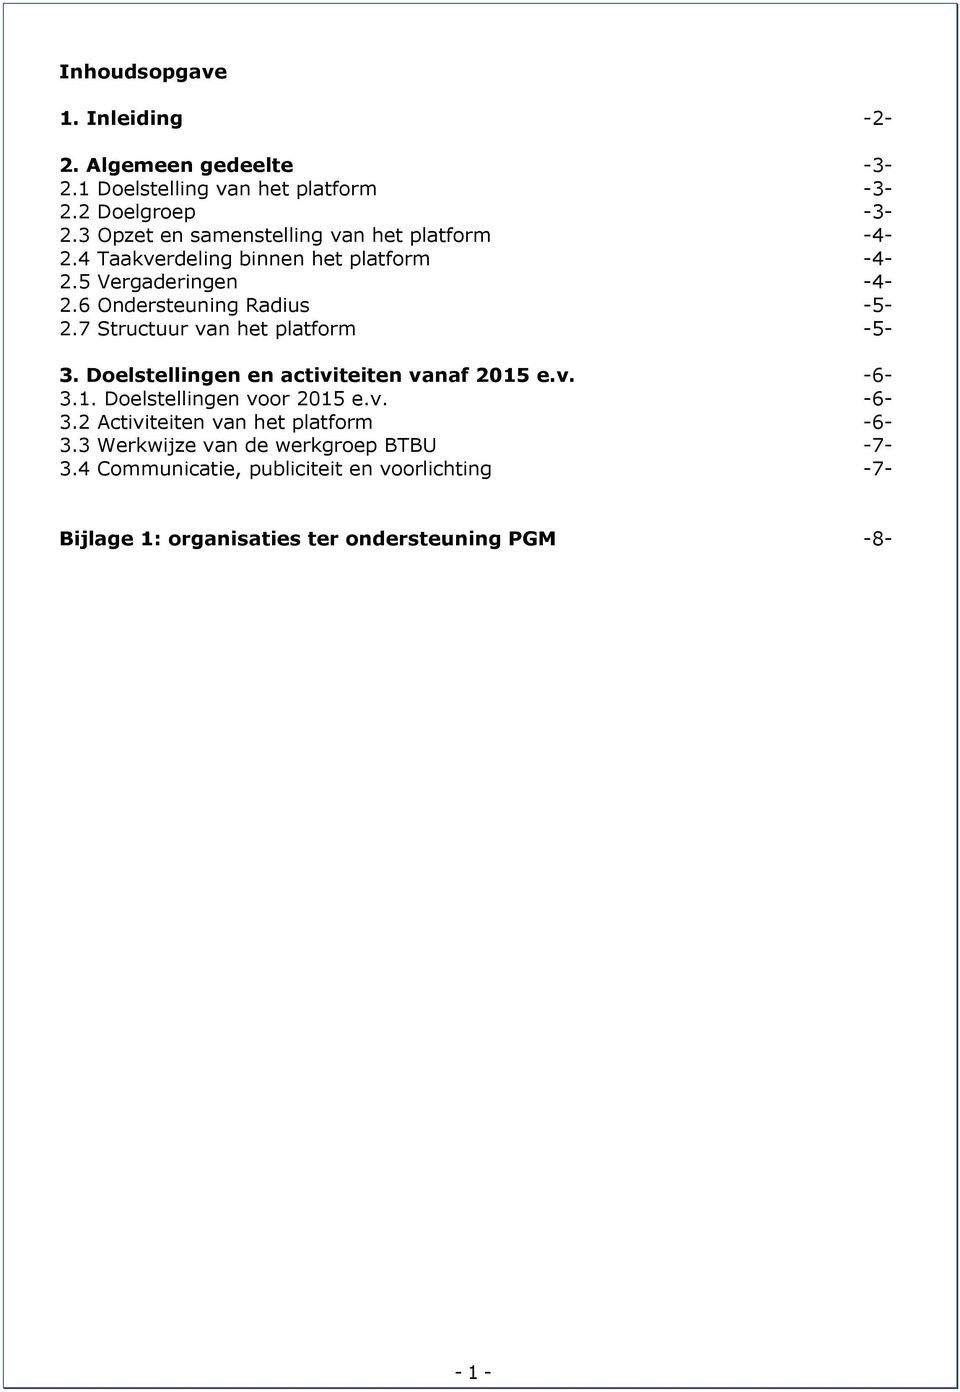 7 Structuur van het platform -5-3. Doelstellingen en activiteiten vanaf 2015 e.v. -6-3.1. Doelstellingen voor 2015 e.v. -6-3.2 Activiteiten van het platform -6-3.